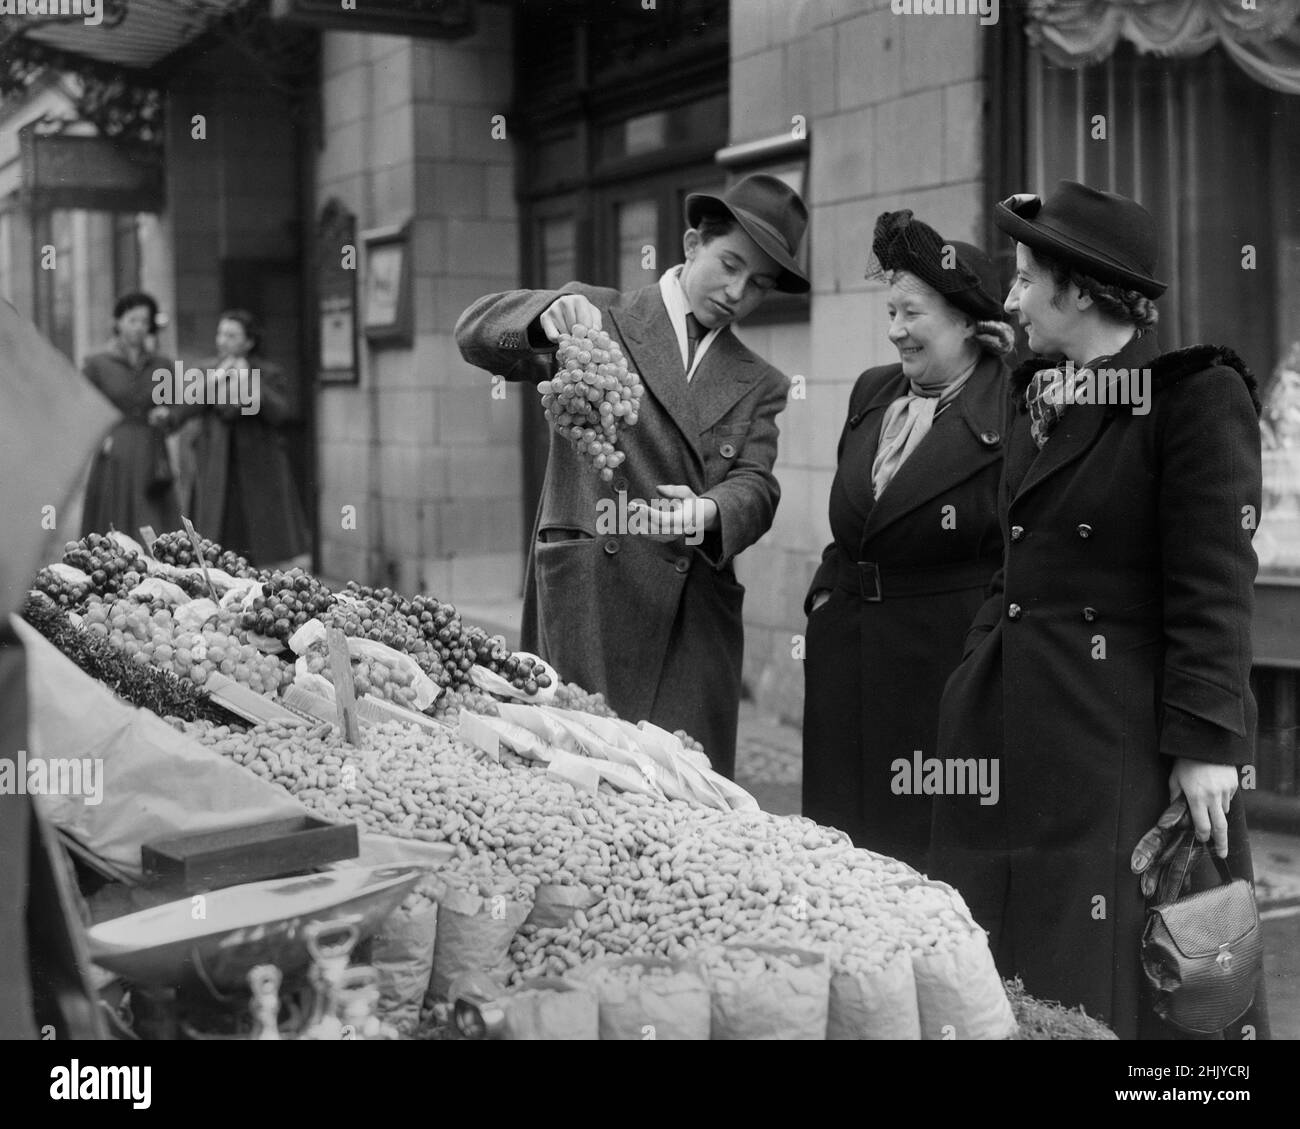 LONDON: Ein Barrow-Junge verkauft in den 1940er Jahren an zwei Frauen mittleren Alters einen Traubenstrauch von seinem Obst- und Gemüsestände am Londoner Strand. Quelle: The DL Archive Collection/Alamy Stockfoto